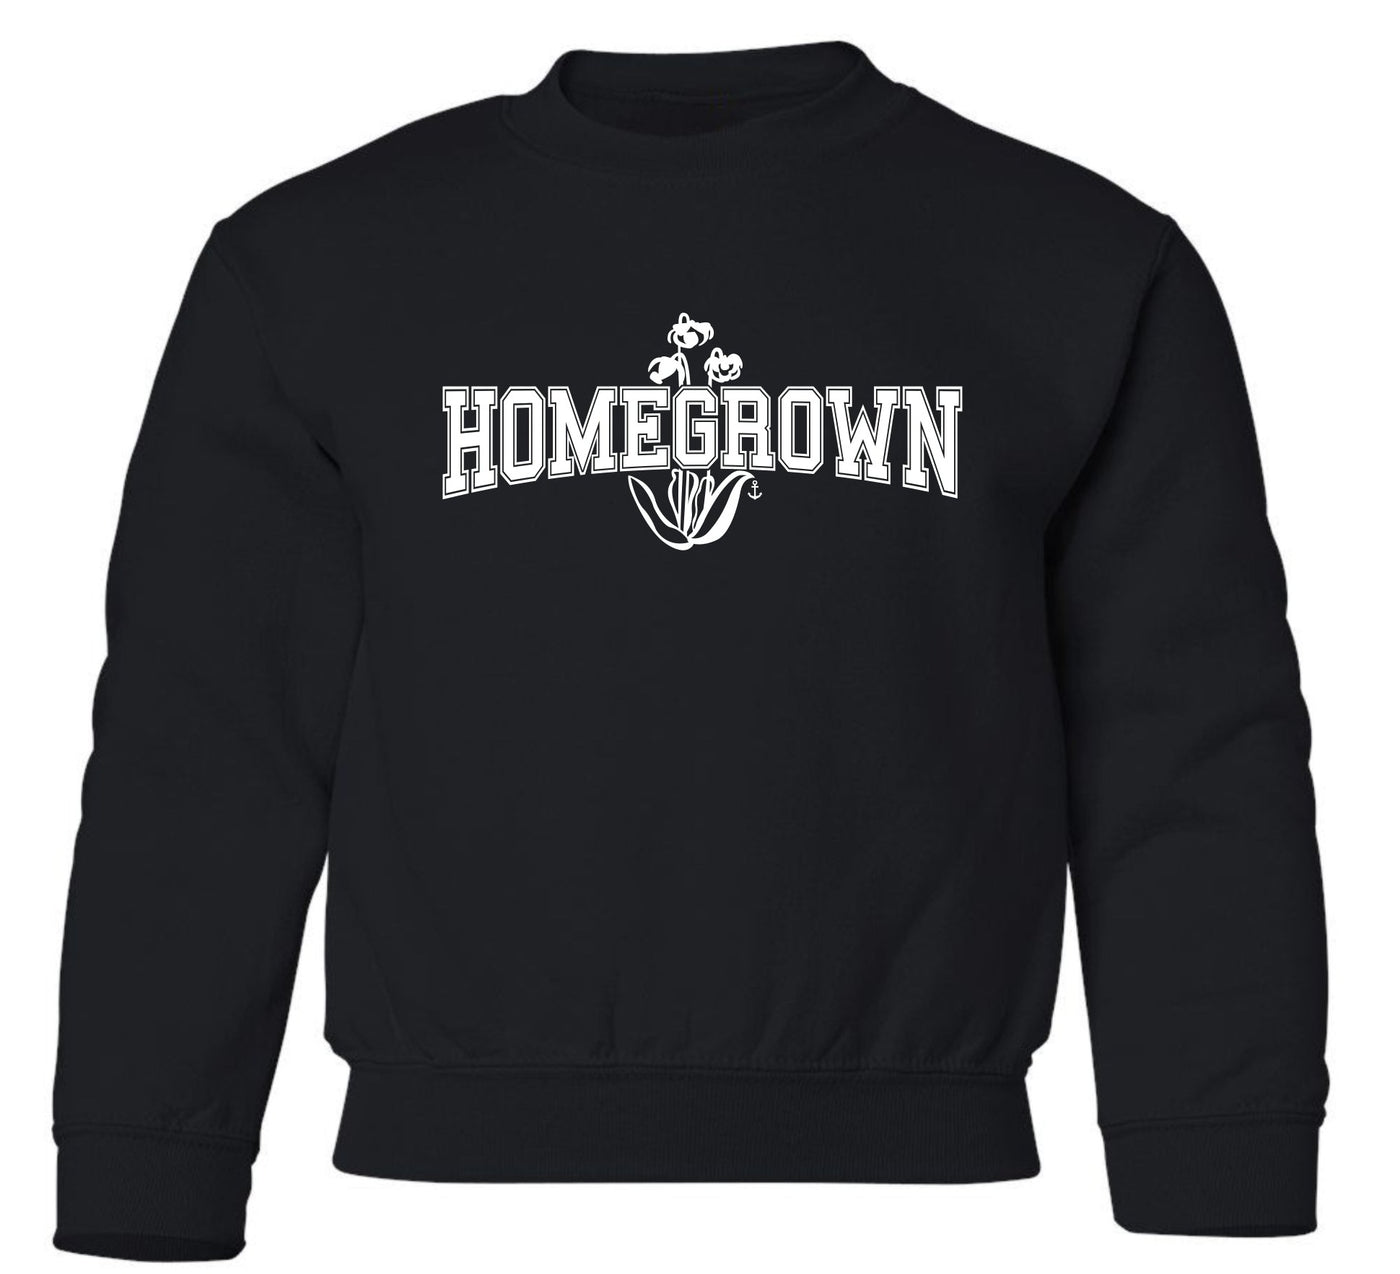 "Homegrown" Toddler/Youth Crewneck Sweatshirt